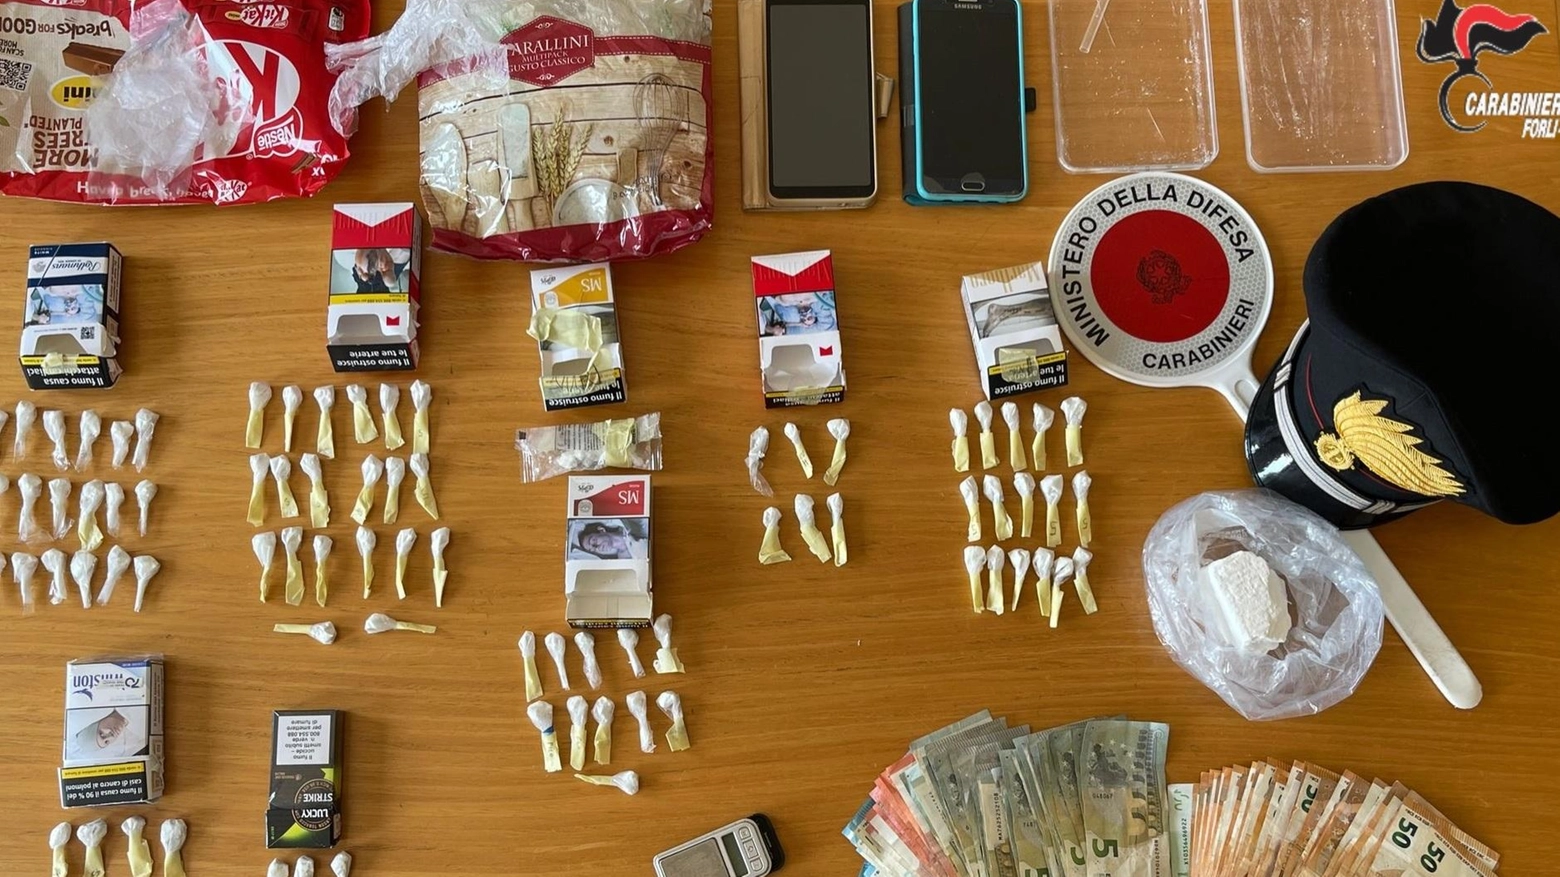 Un barista di 46 anni della Valle del Rabbi è stato arrestato per spaccio di droga nel suo locale. I carabinieri hanno trovato cocaina, bilancini e denaro.